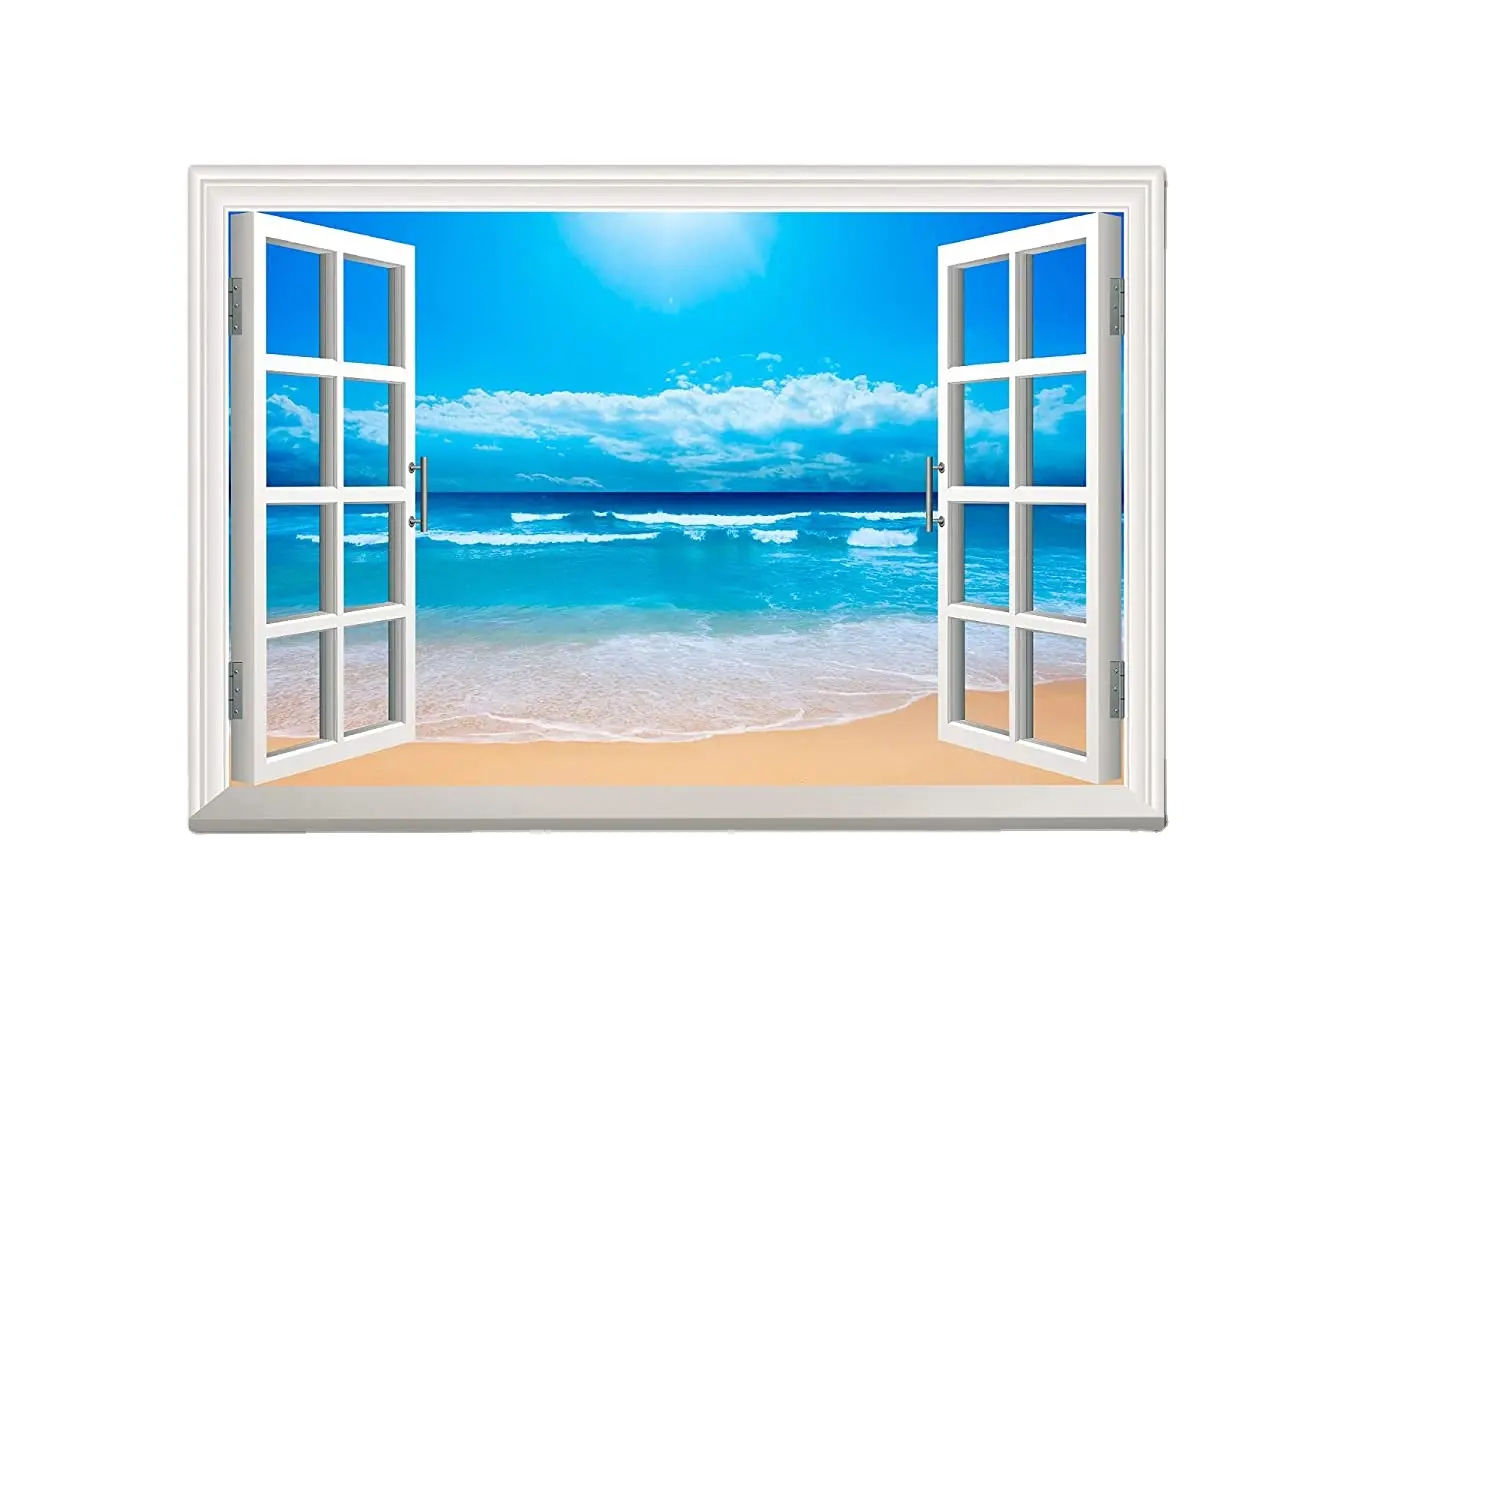 wall26 Canvas Print Wall Art Window View Landscape Bright Blue Beach Nature Wilderness Photography Modern Art